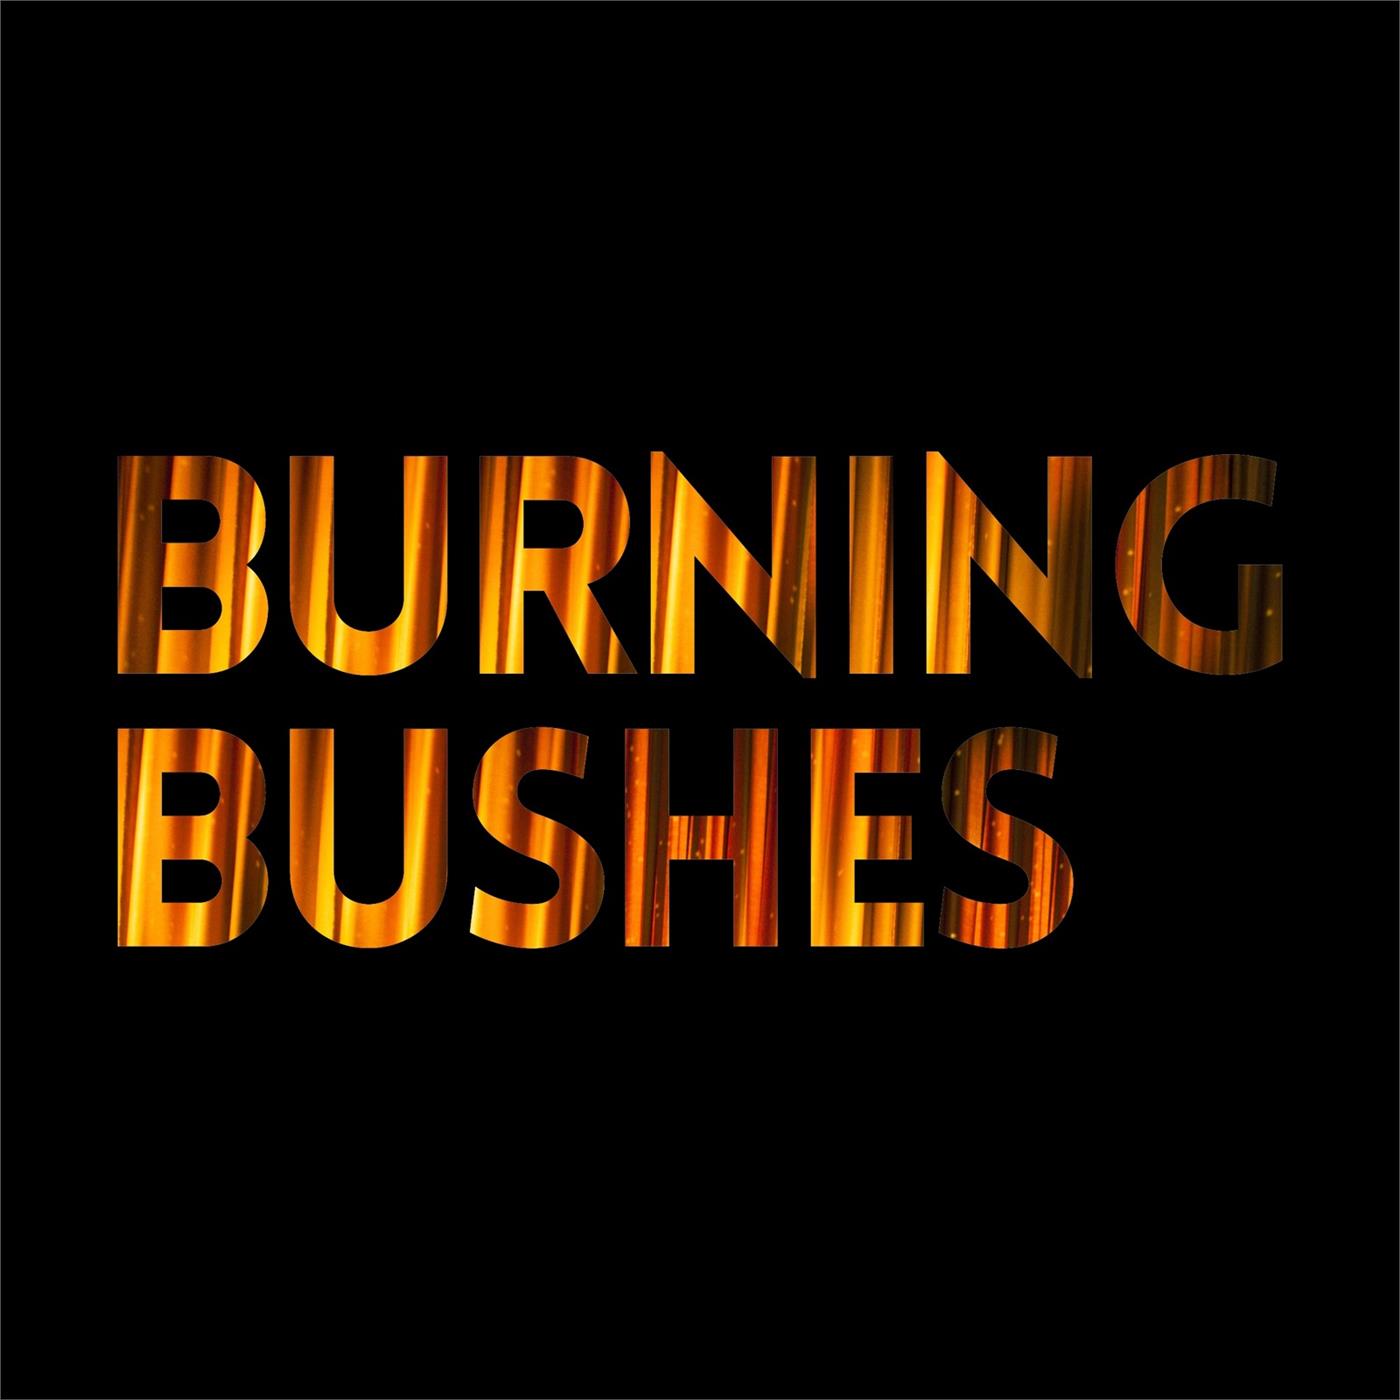 Burning Bushes